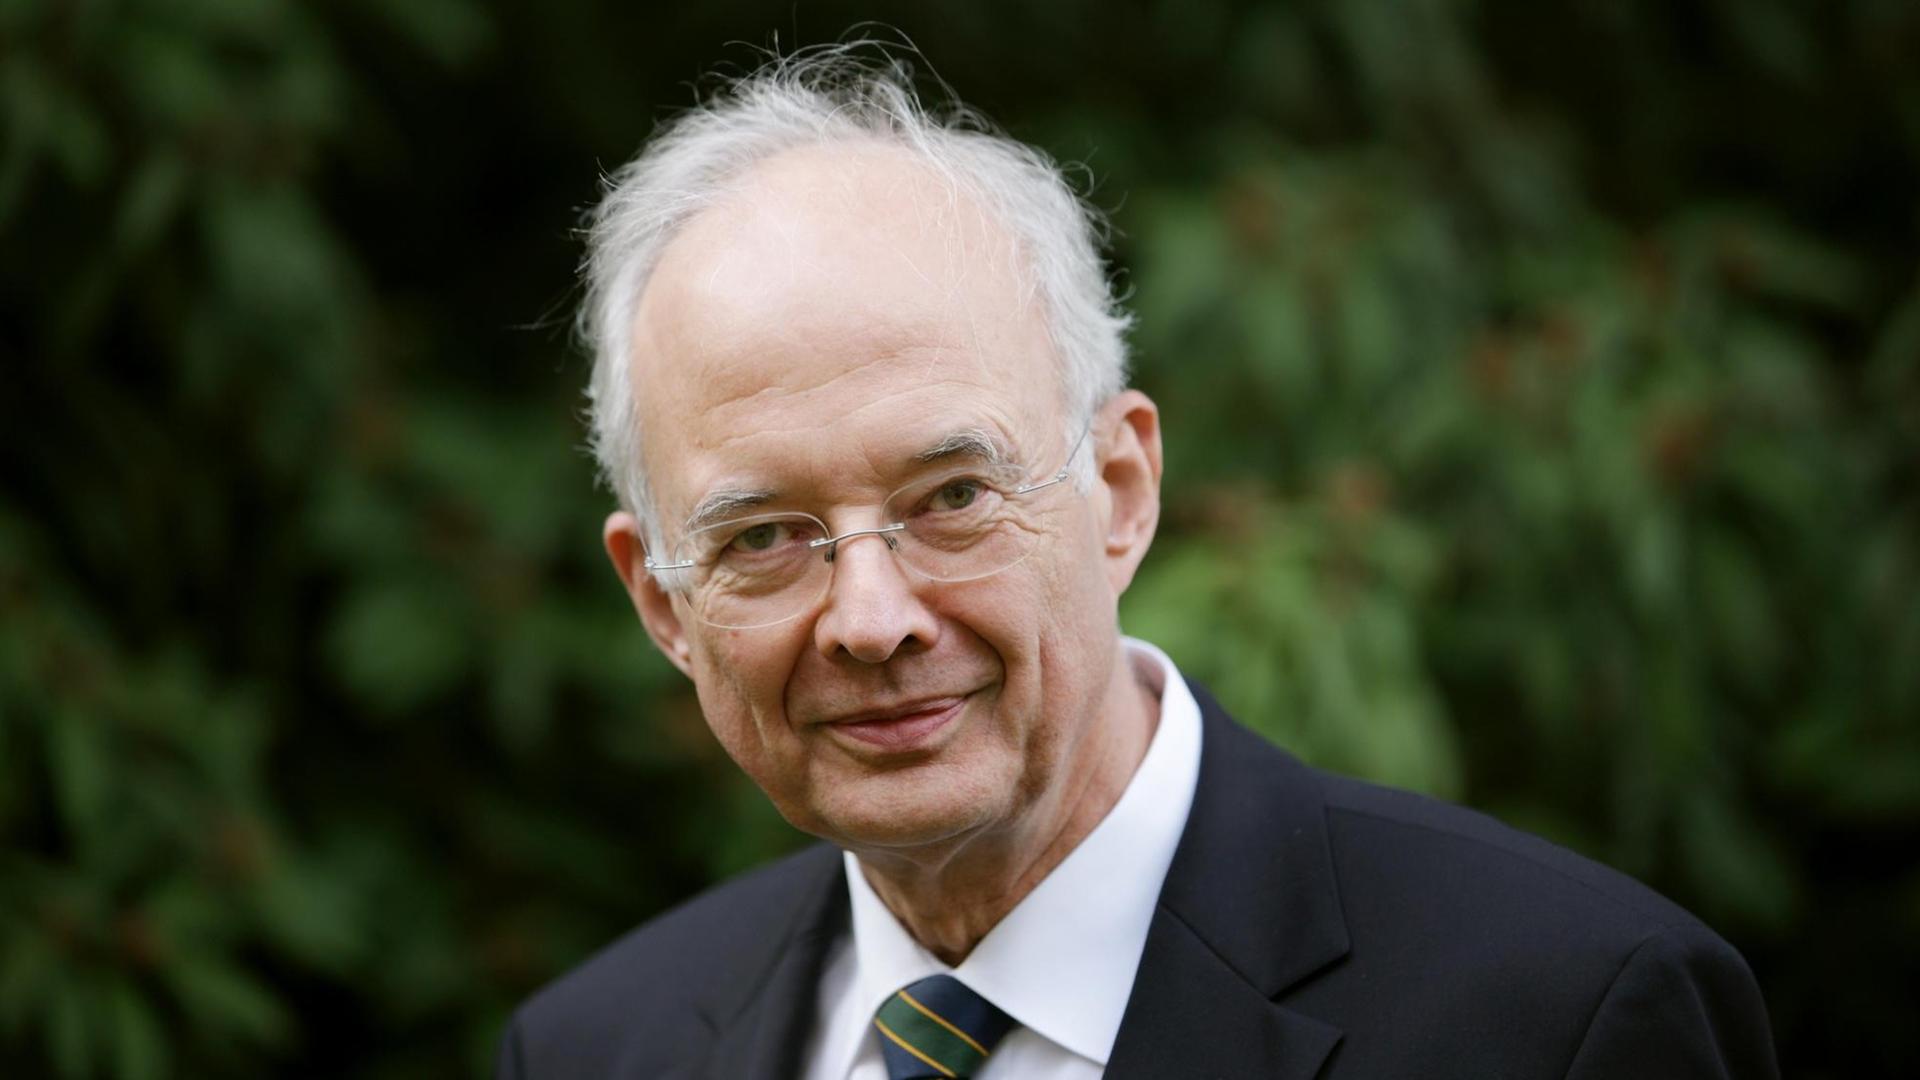 Verfassungsrechtler Paul Kirchhof, aufgenommen am 08.10.2012 in Bonn (Nordrhein-Westfalen).